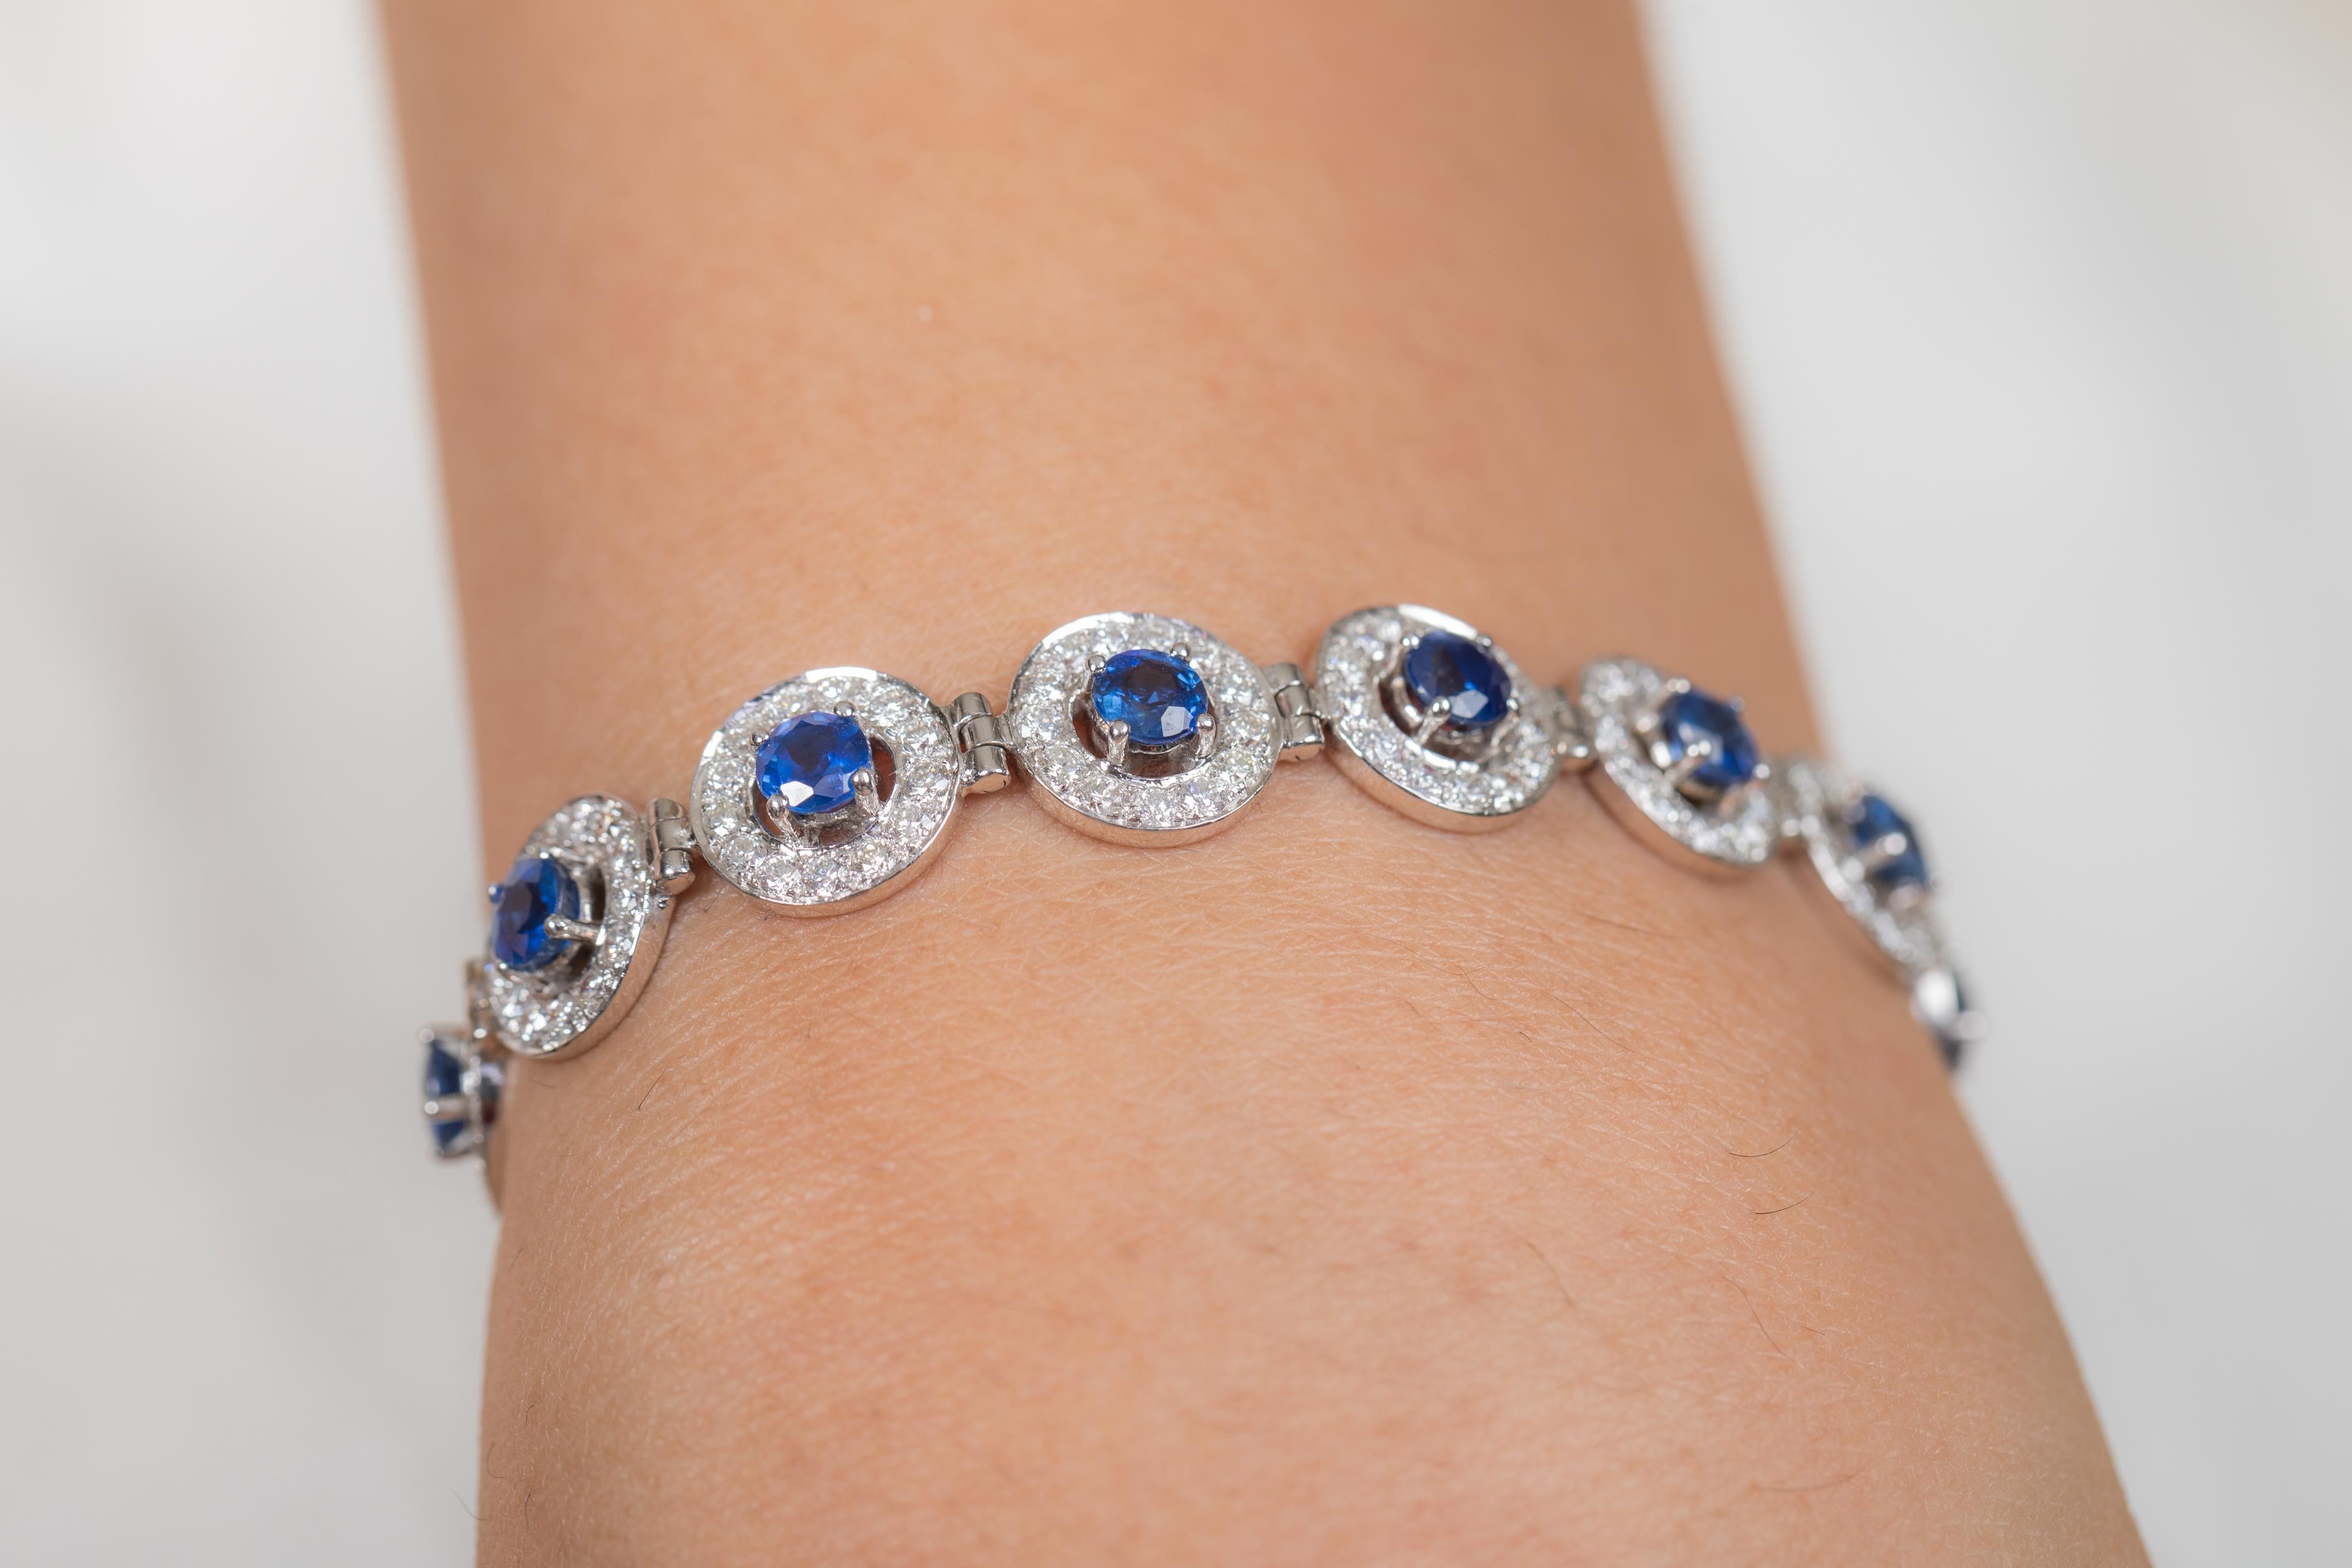 Bracelet en saphir bleu et diamant en or 18K. Il est doté d'une pierre précieuse de taille ronde parfaite qui vous permettra de vous distinguer en toute occasion ou lors d'un événement.
Un bracelet de tennis est un bijou essentiel pour le jour de